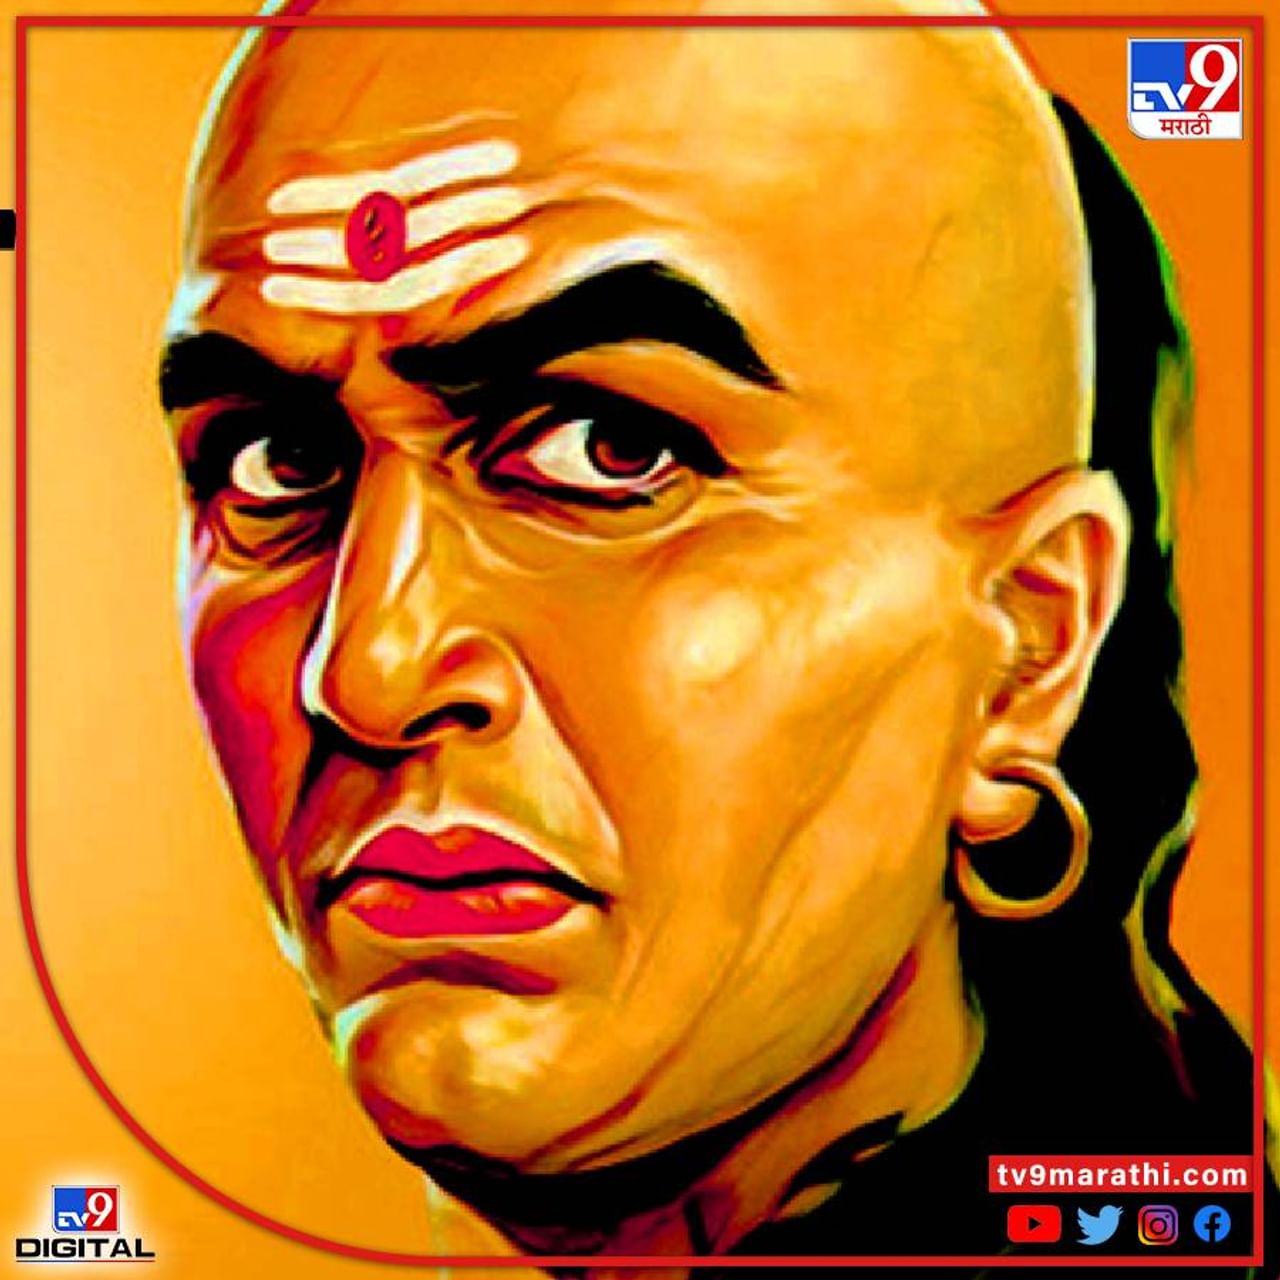 आचार्य चाणक्य (Chanakya Niti) हे महान व्यक्तिमत्व होते. चाणक्याच्या धोरणांमुळे नंद वंशाचा नाश झाला आणि त्याच्याच धोरणांच्या जोरावर एक साधा मुलगा चंद्रगुप्त मौर्य मगध राज्याचा सम्राट झाला असे म्हणतात. चाणक्याला (Chanakya) केवळ राजकारणच नव्हे तर समाजाच्या प्रत्येक विषयाचे सखोल ज्ञान होते. आचार्य चाणक्य यांच्या नीतिशास्त्र या पुस्तकात वैवाहिक (Married life) जीवनासाठी अशा अनेक गोष्टी सांगितल्या आहेत.